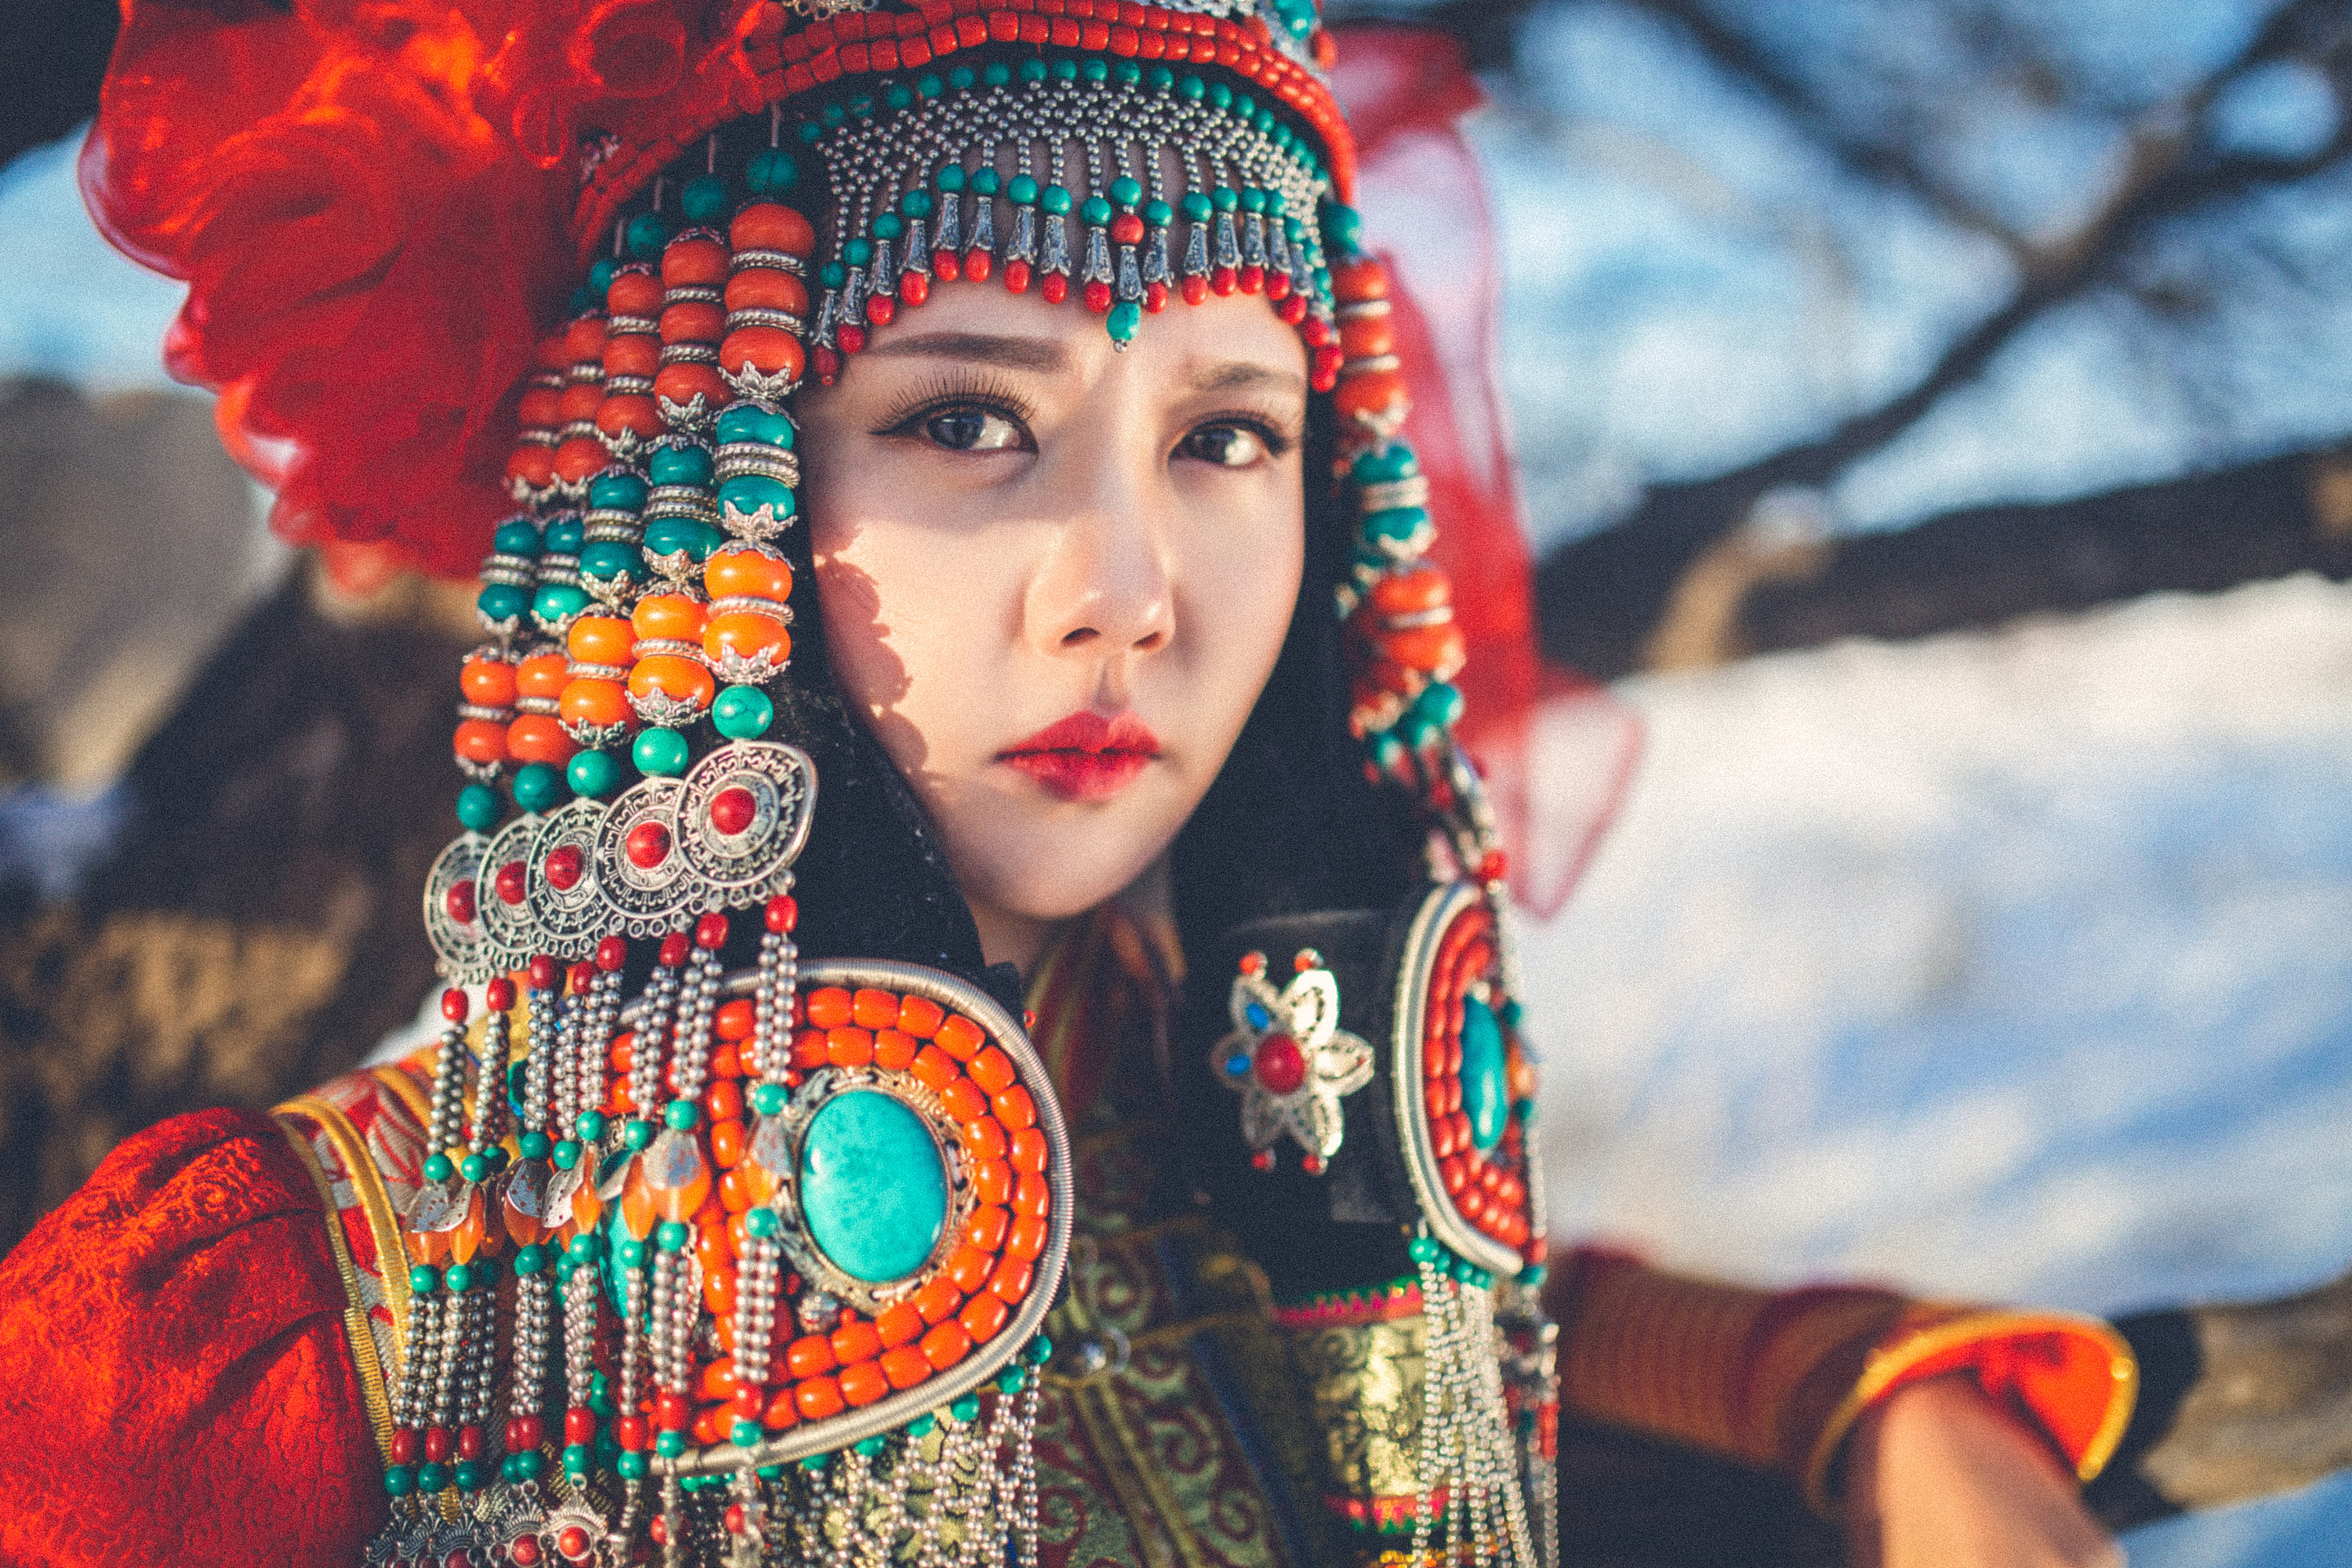 我国的蒙古族,是怎么看待蒙古的?内蒙姑娘表示感情复杂!